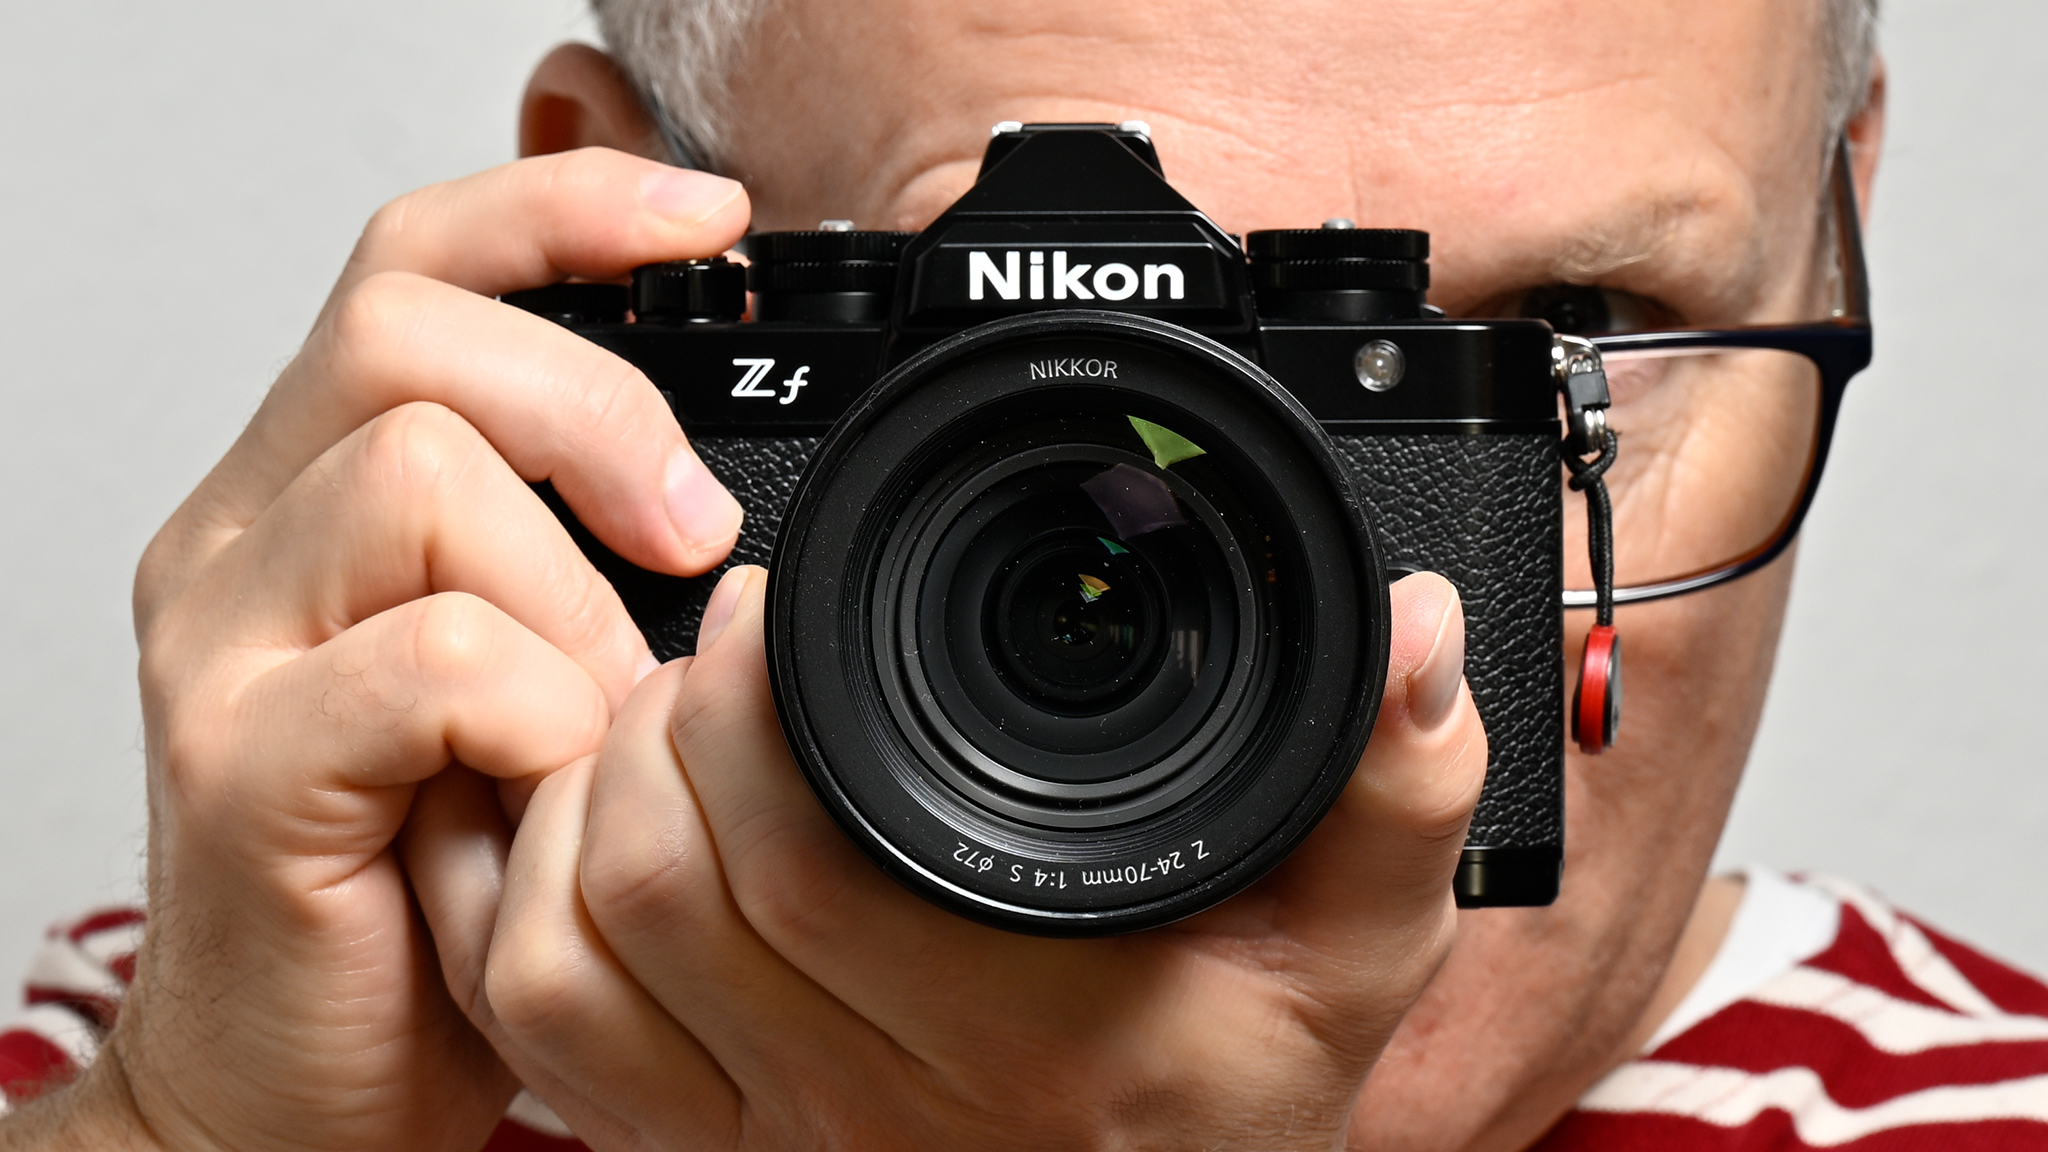 Nikon Zf: Test der Systemkamera - COMPUTER BILD